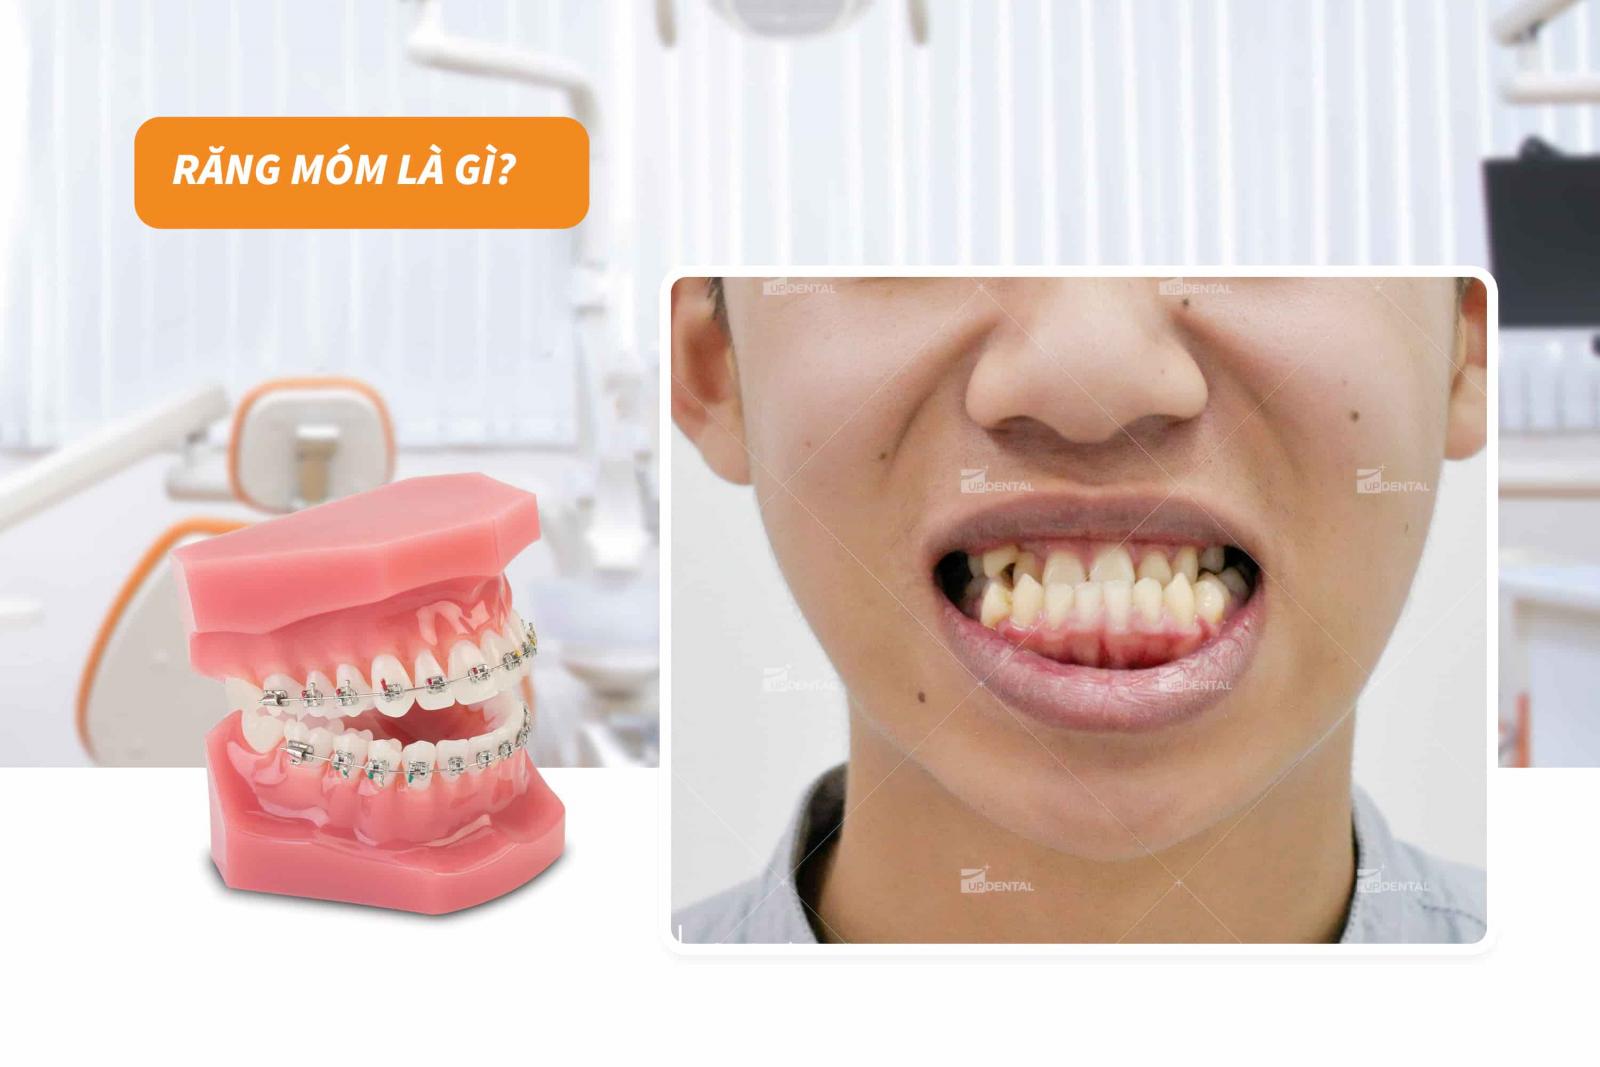 Răng móm là gì?